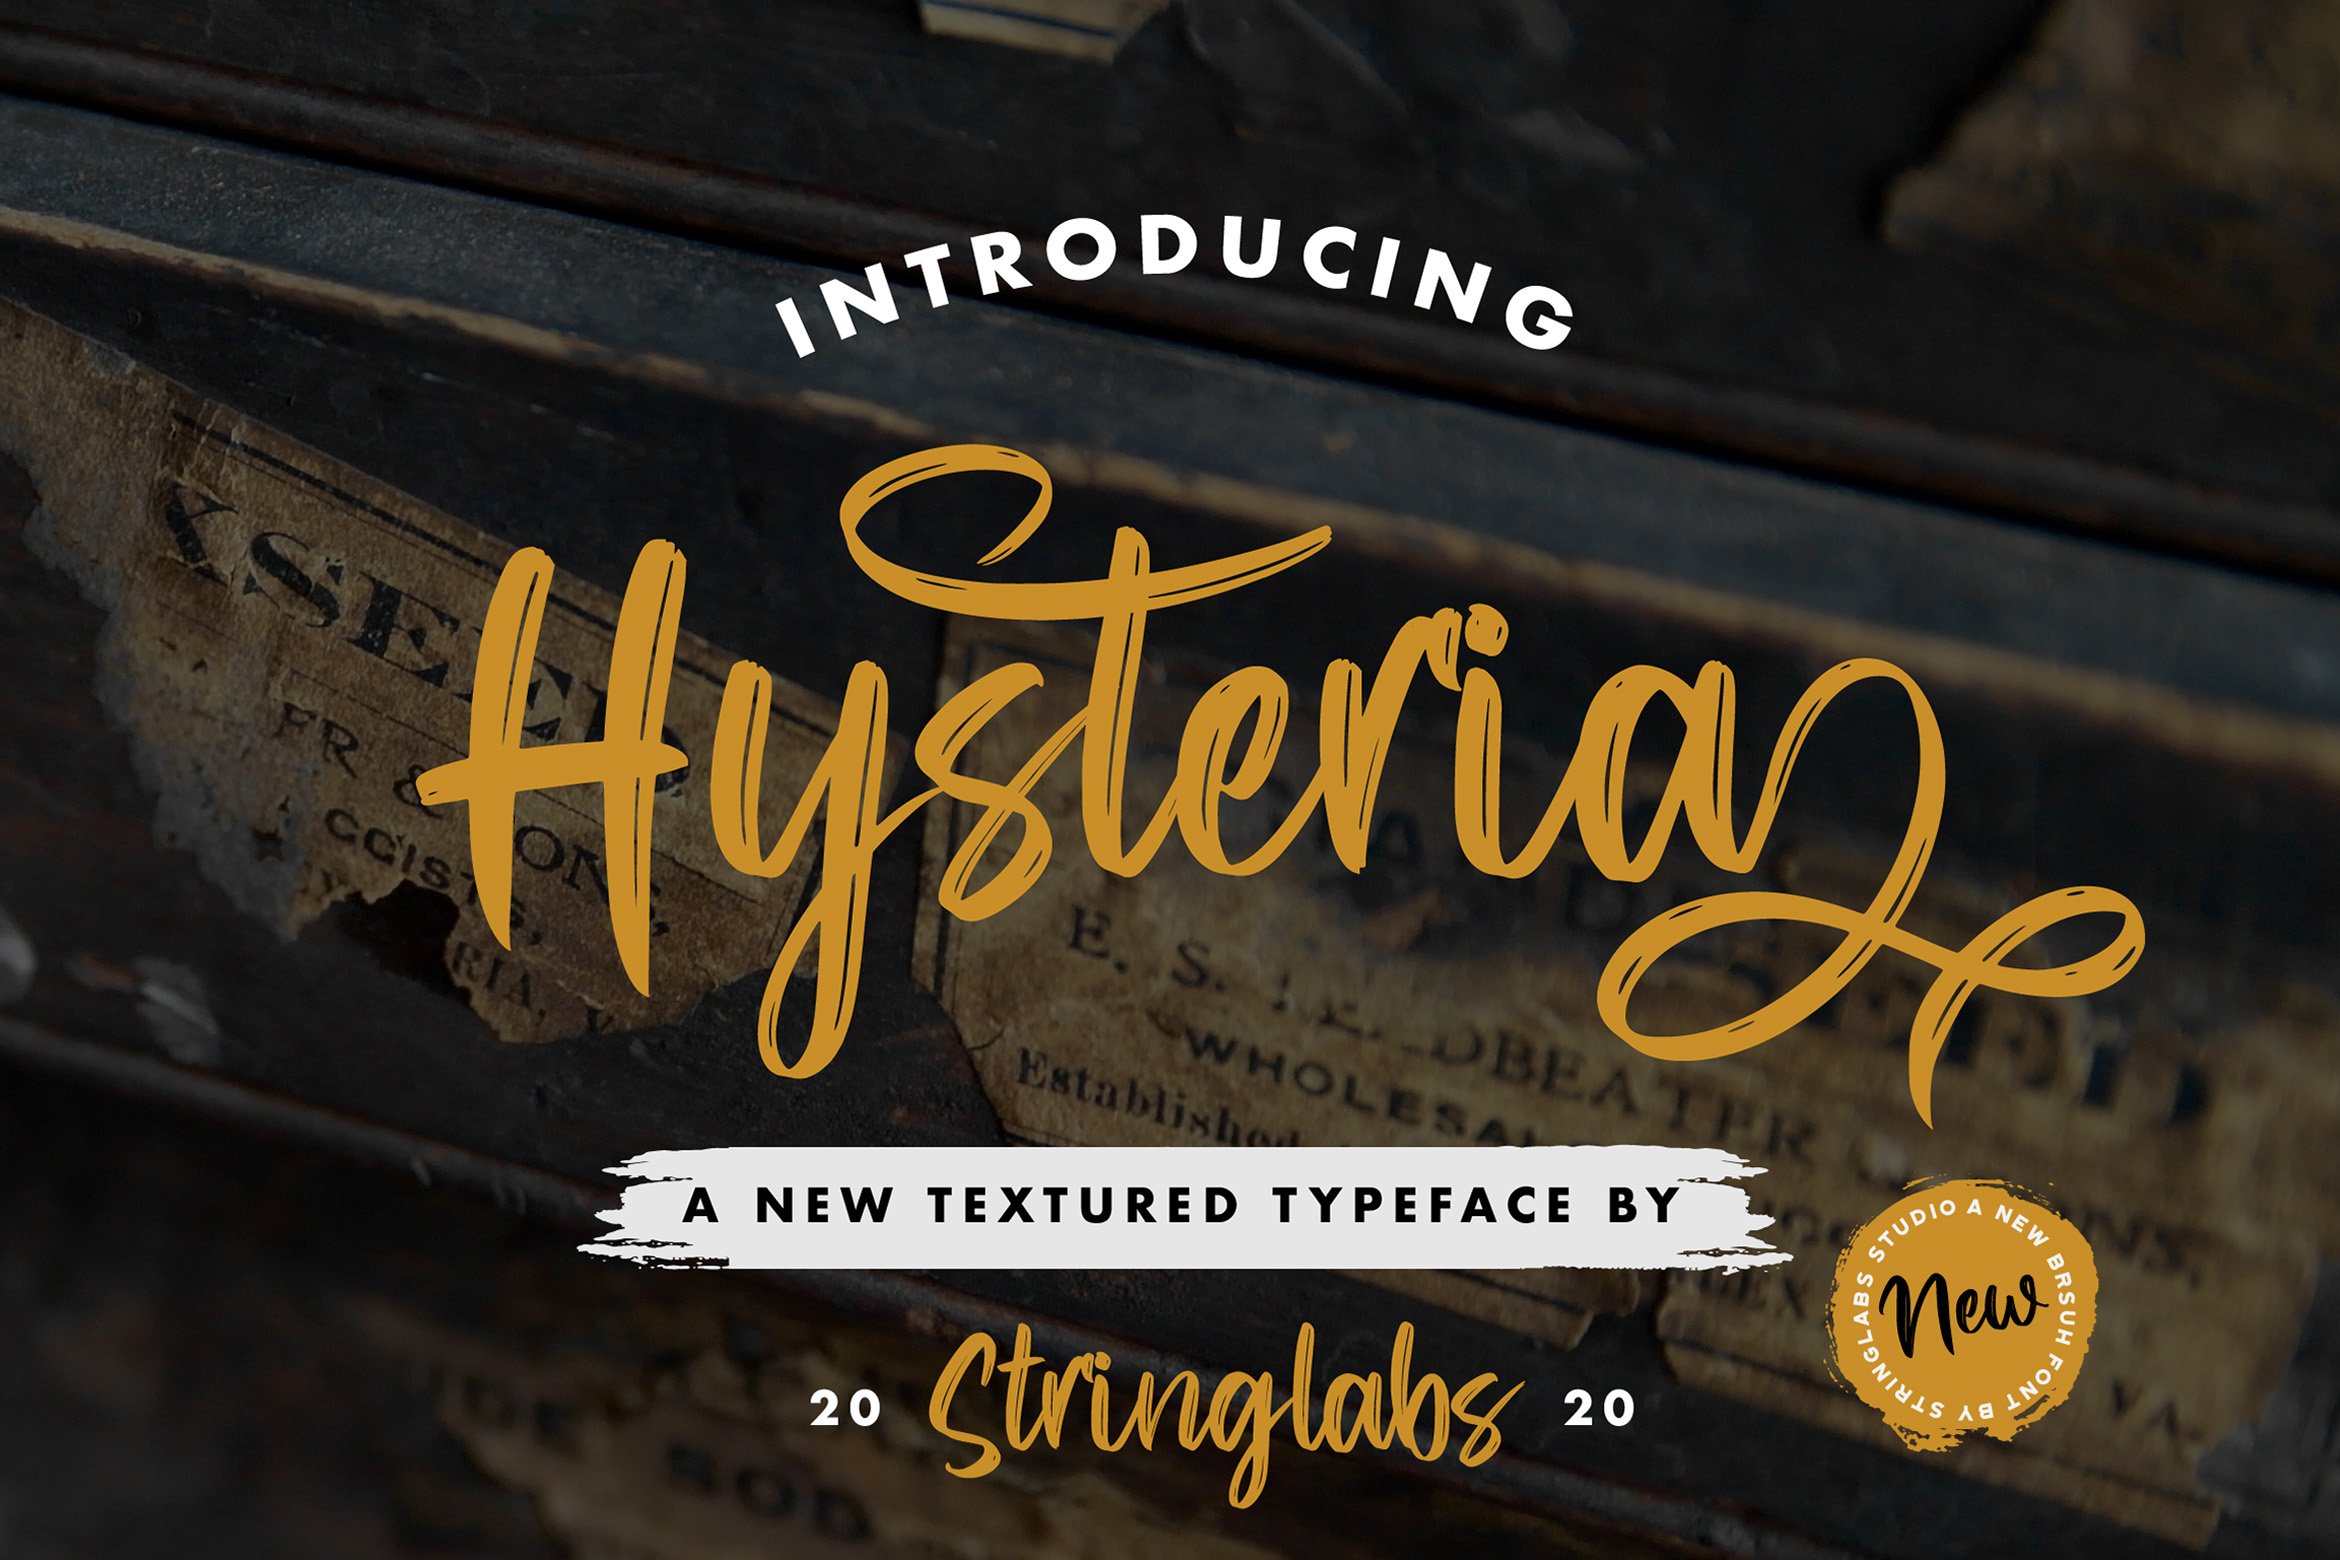 Hysteria - Stylish Script Font cover image.